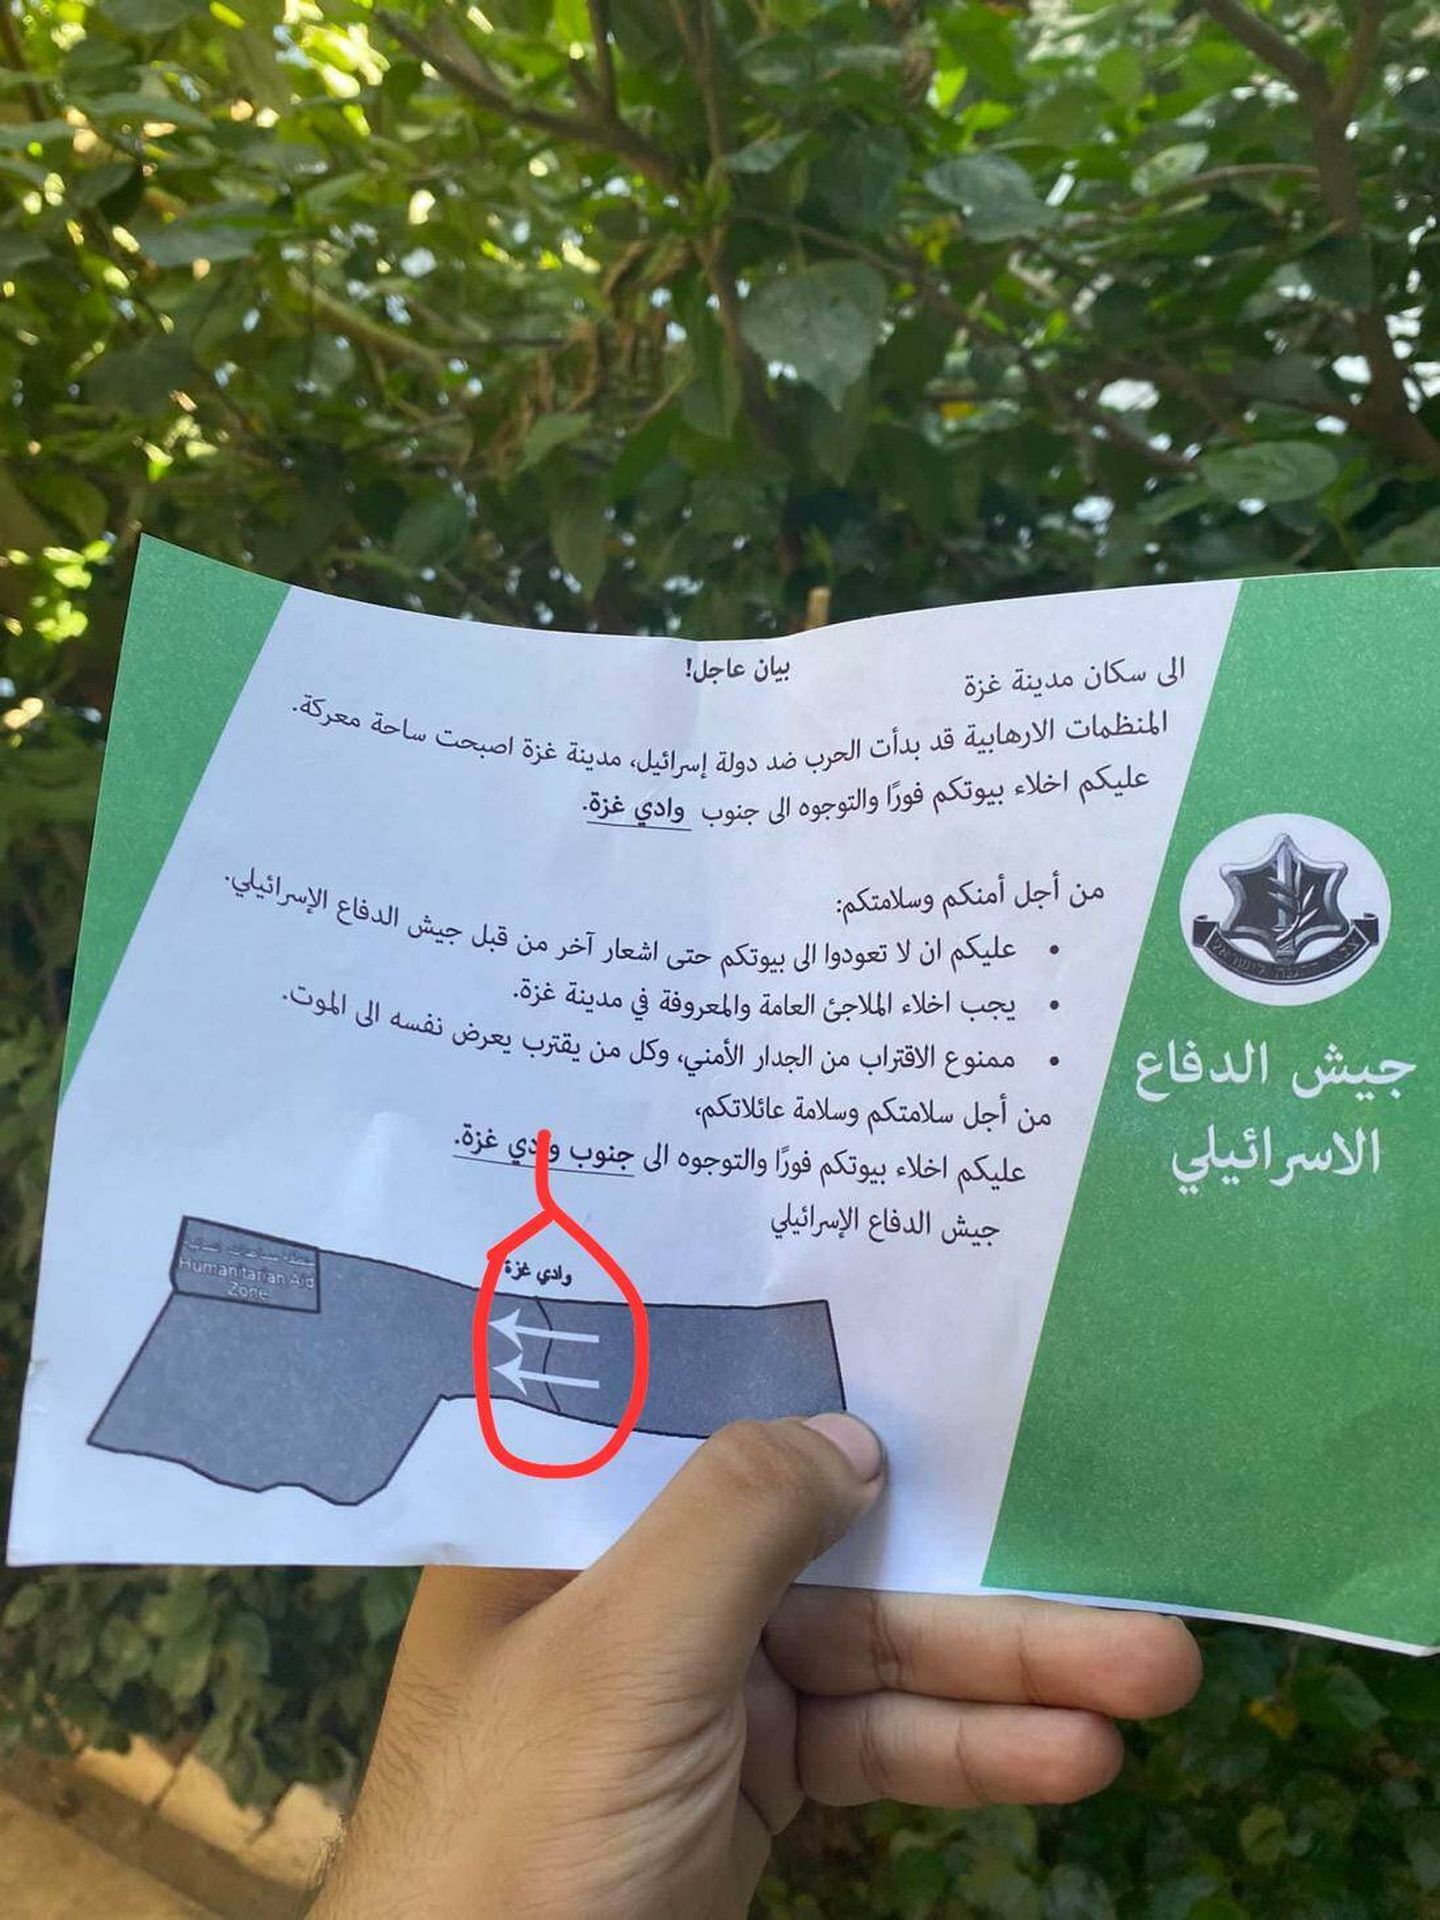 Imagen del panfleto que han tirado aviones israelíes sobre el norte de Gaza. Said ha marcado, al enviarla por Whatsapp, la frontera entre el norte y sur de la Franja. (Cedida)